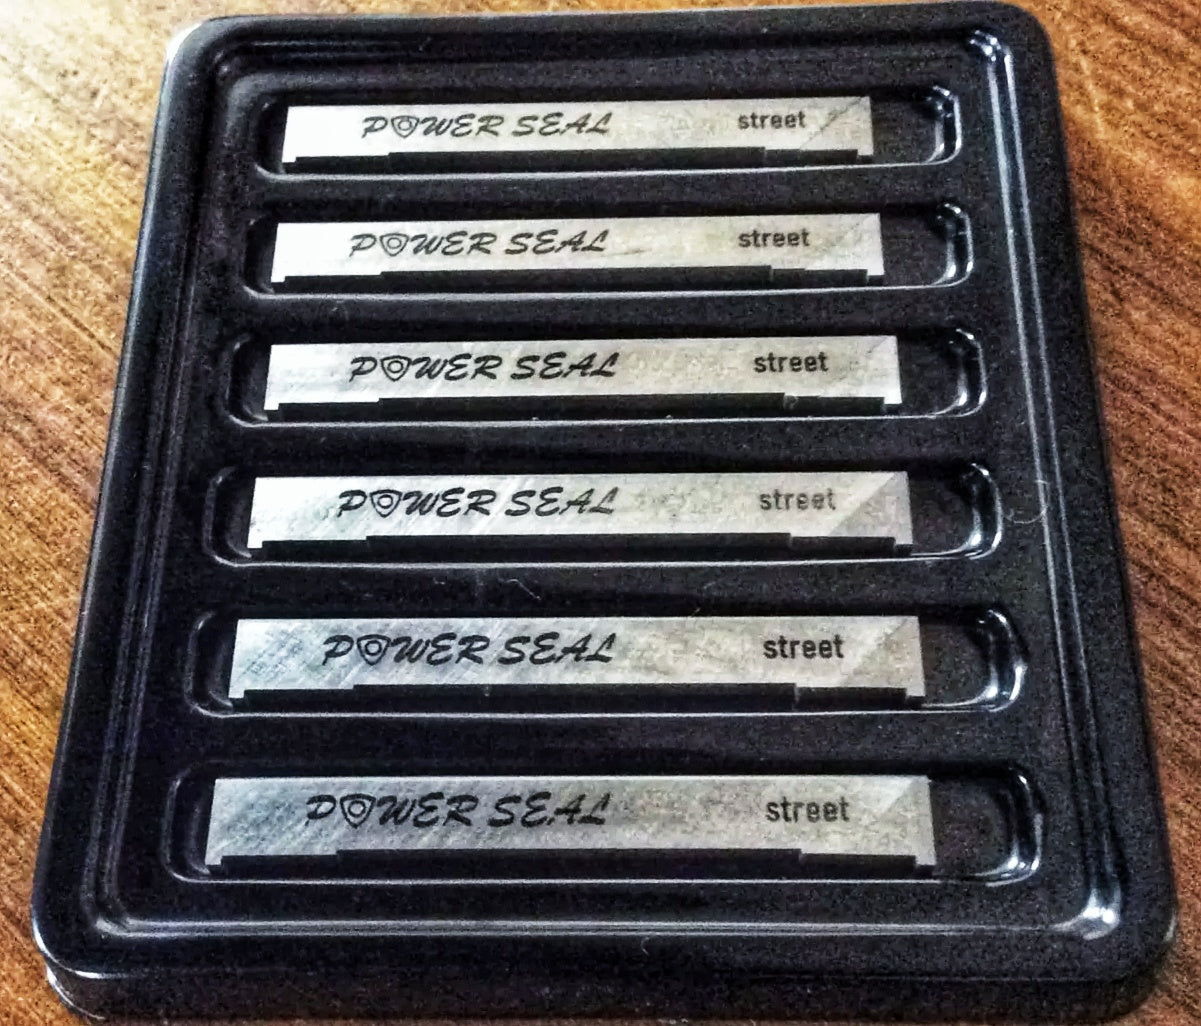 12A Street Power Seals